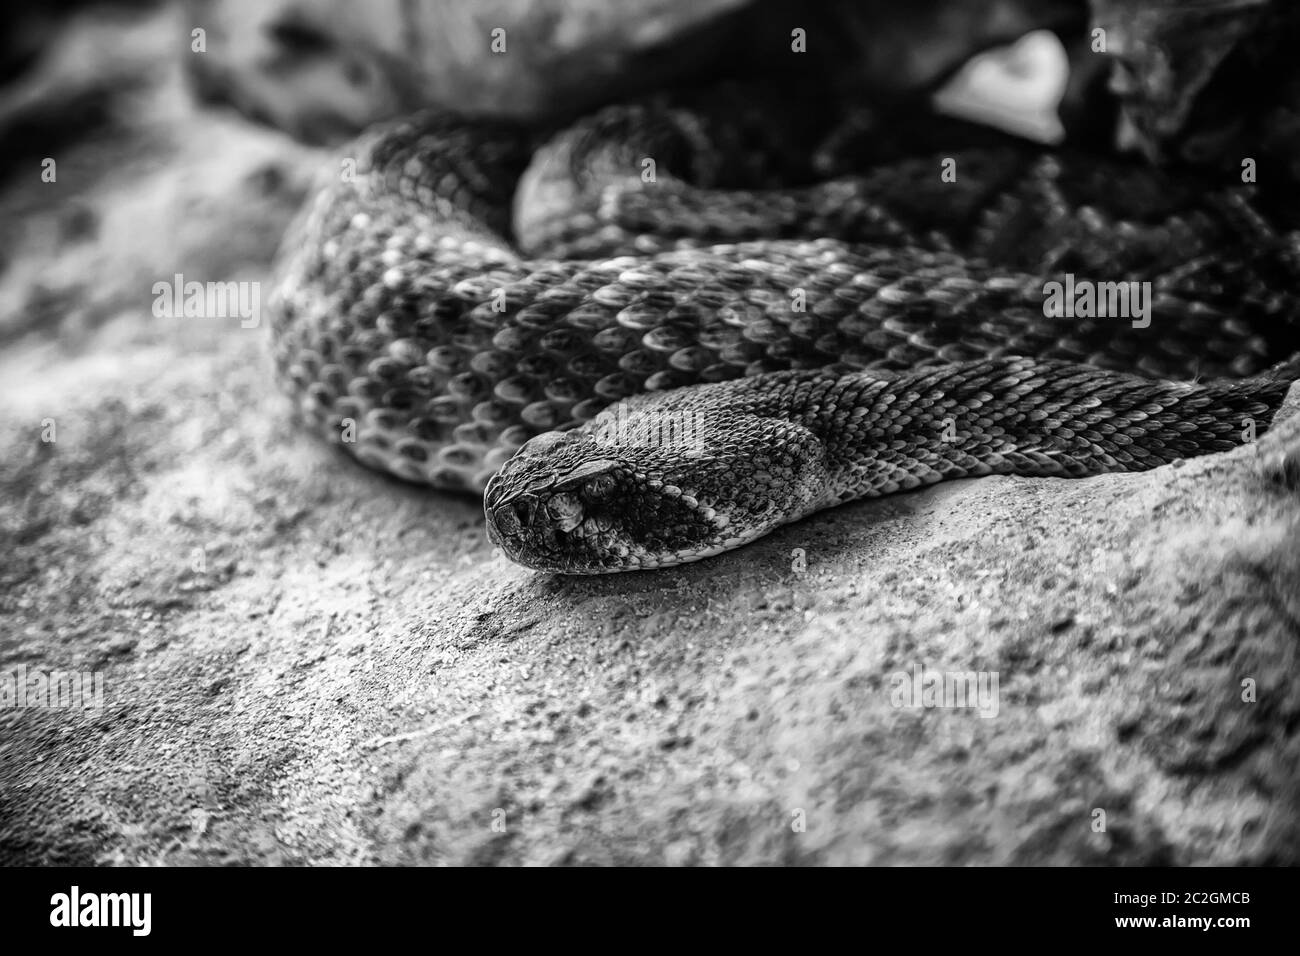 Wild poisonous snake, dangerous animal detail, deadly poison Stock Photo